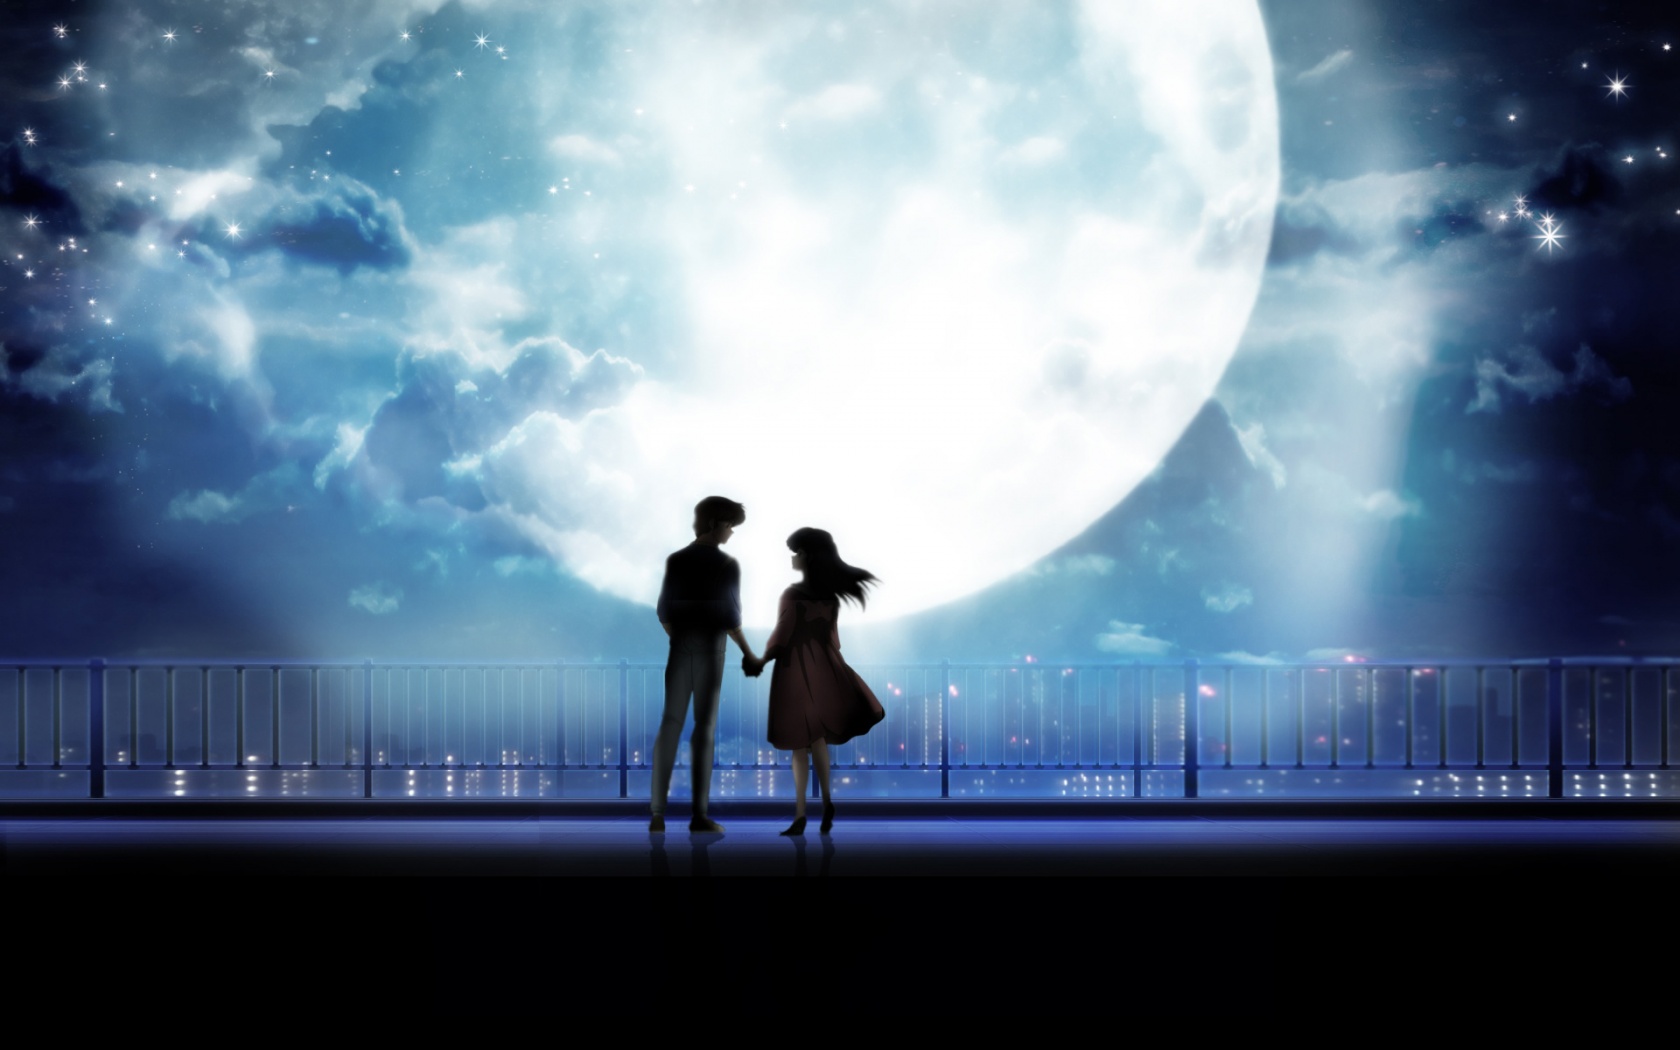 Những bức tranh anime art đầy màu sắc, những cặp đôi anime quyến rũ trong ánh trăng sẽ khiến bạn phải trầm trồ khen ngợi. Chúng tôi hoàn toàn có những bức tranh đẹp và ấn tượng nhất về anime art, anime couple và moonlight. Hãy xem ngay để đắm chìm vào thế giới tuyệt vời của anime!